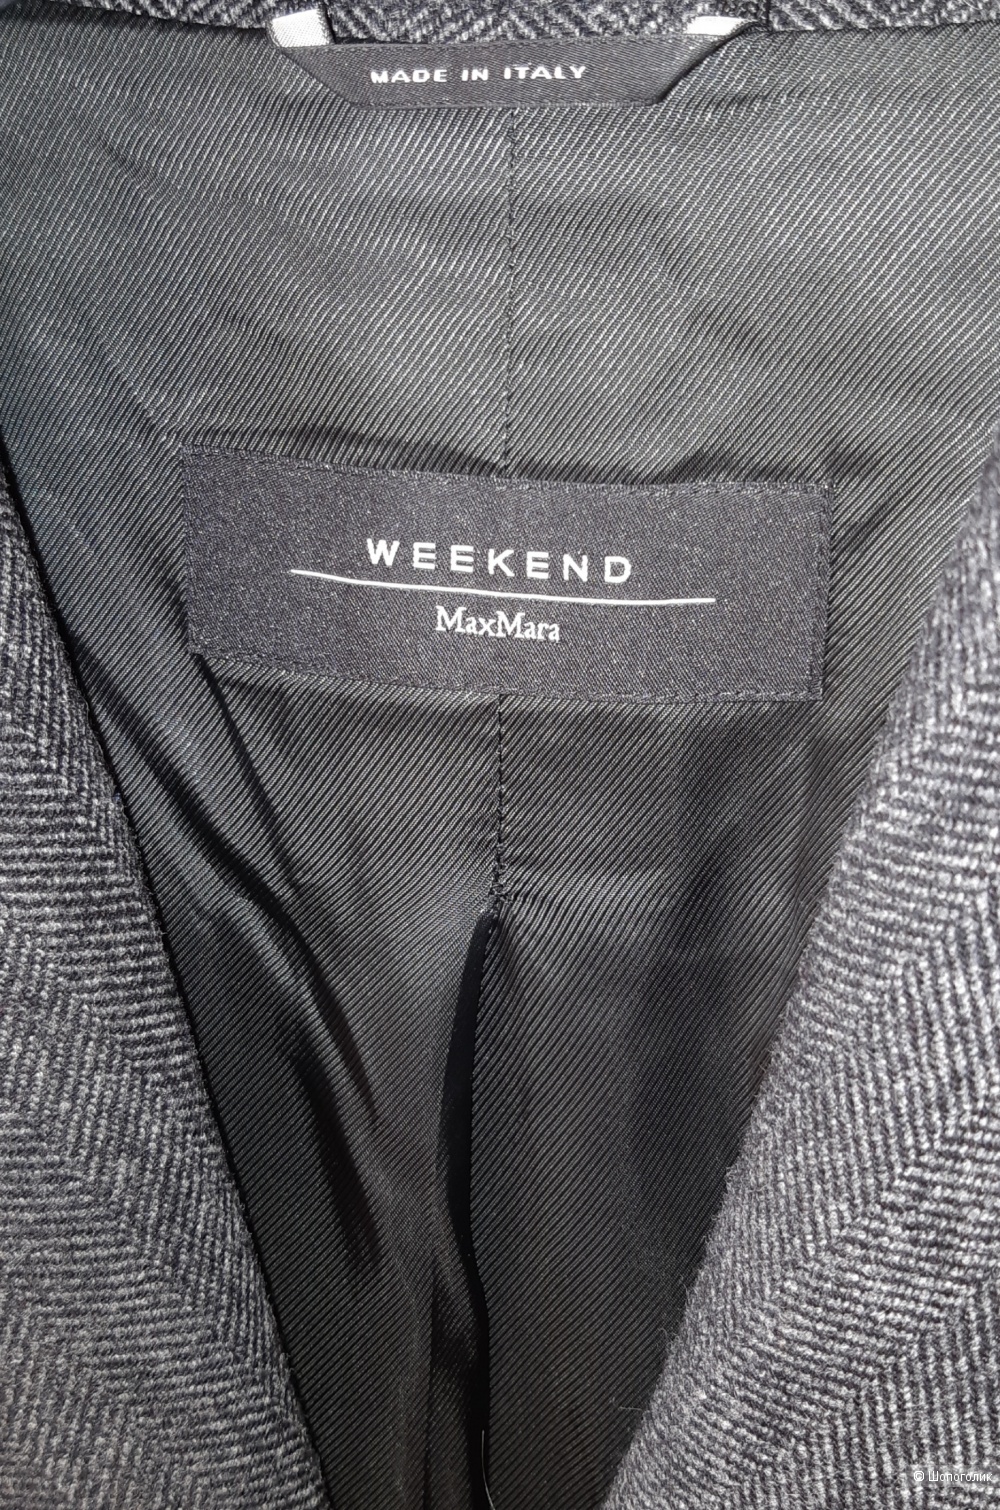 Шерстяной пиджак weekend maxmara, размер 46